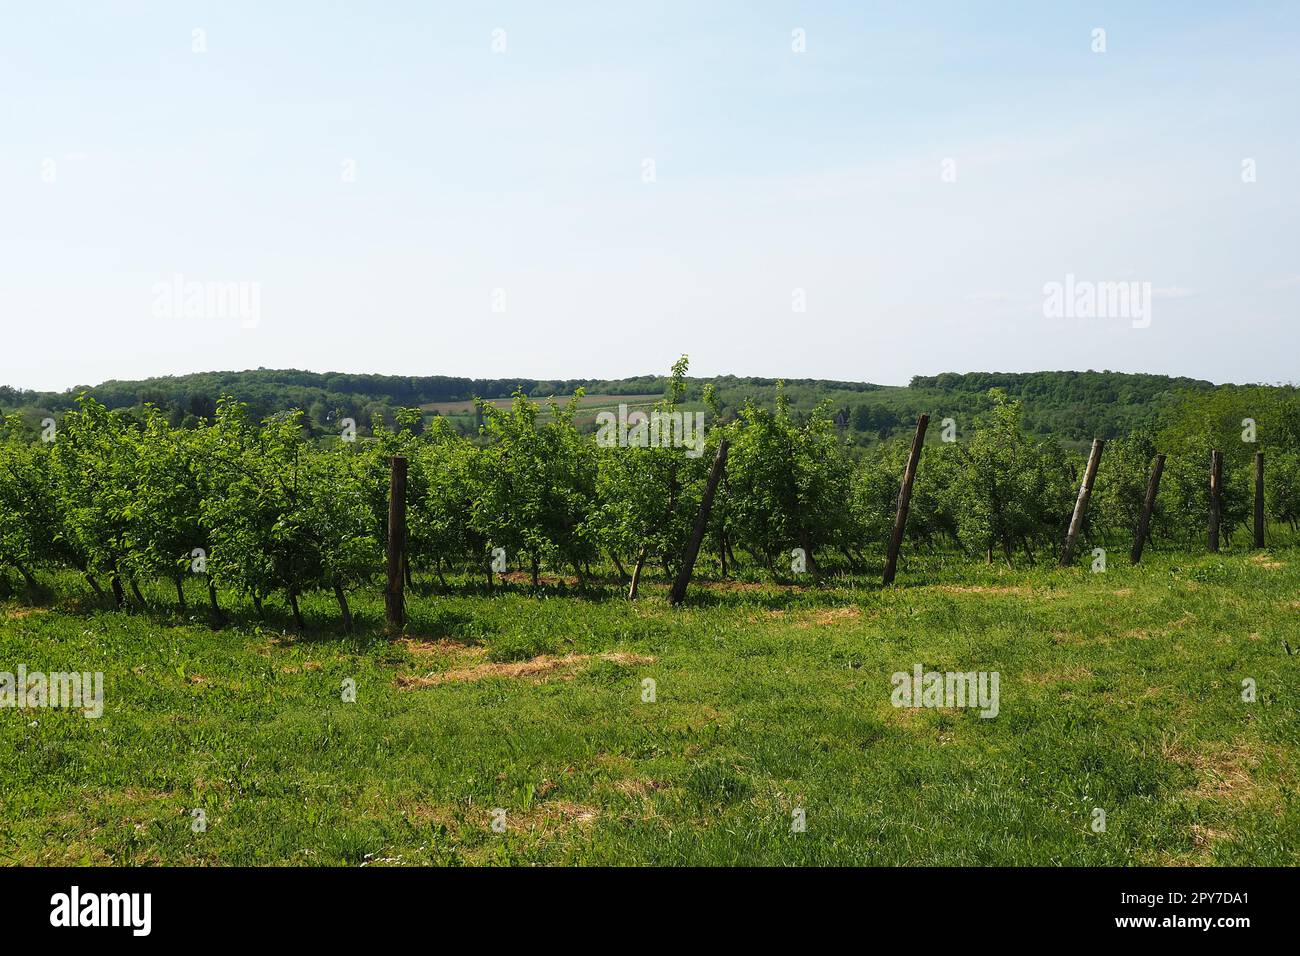 Obstgarten an den Hängen des Berges Fruska, Serbien, Sremska Mitrovica, Novi Sad. Rohal ist eine Erholungsbasis für Menschen. Landwirtschaft auf dem Balkan. Touristenattraktionen Serbiens. Ethno-Tourismus Stockfoto